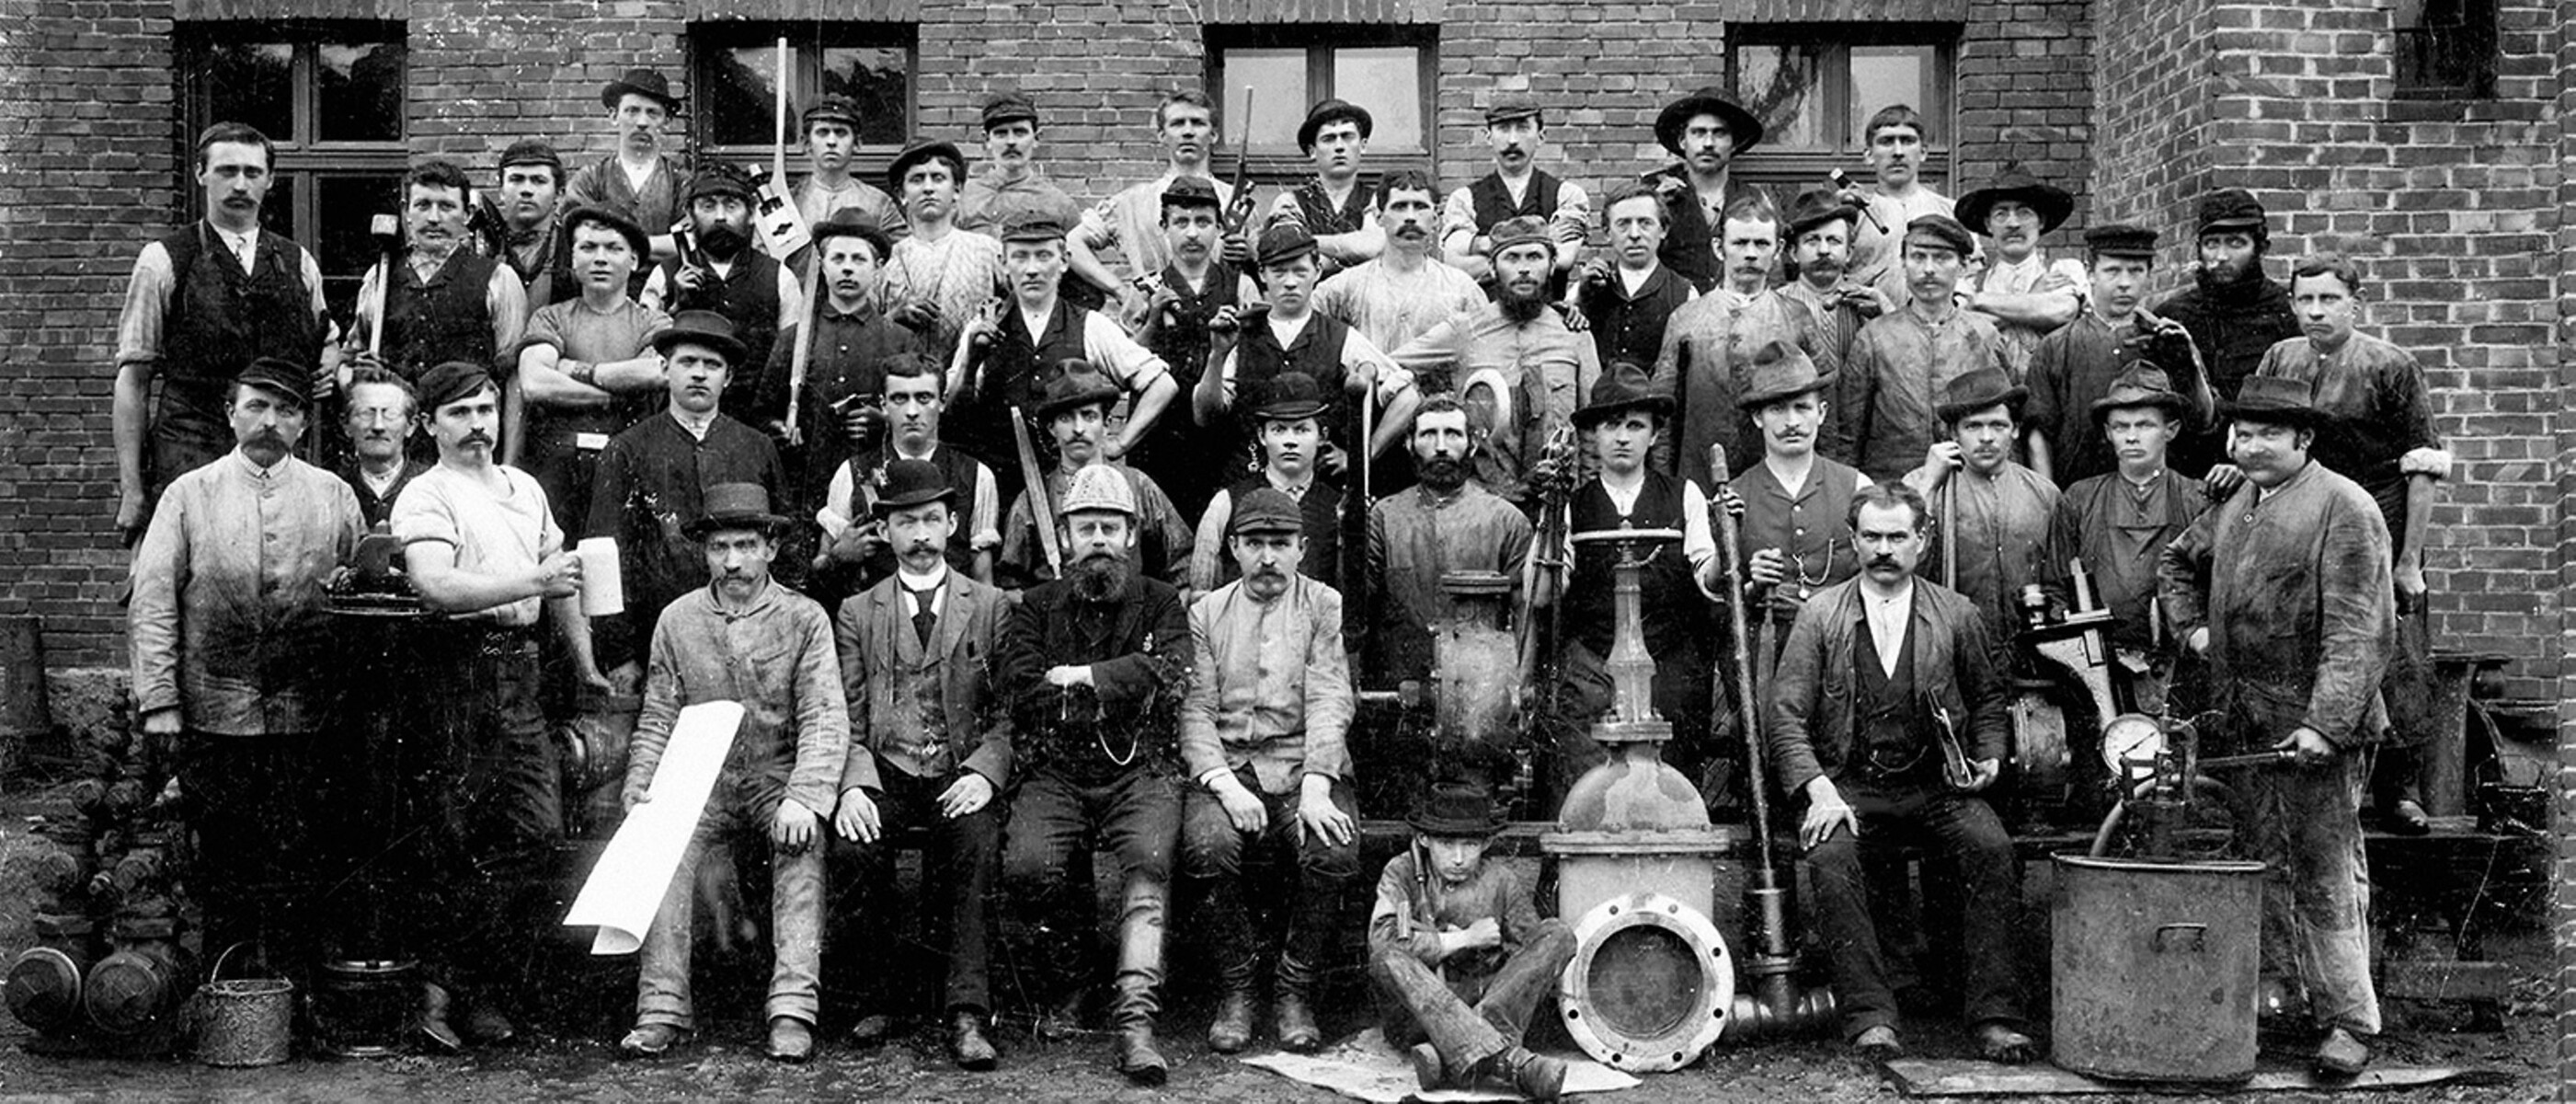 The workforce of KSB’s valves shop in 1930